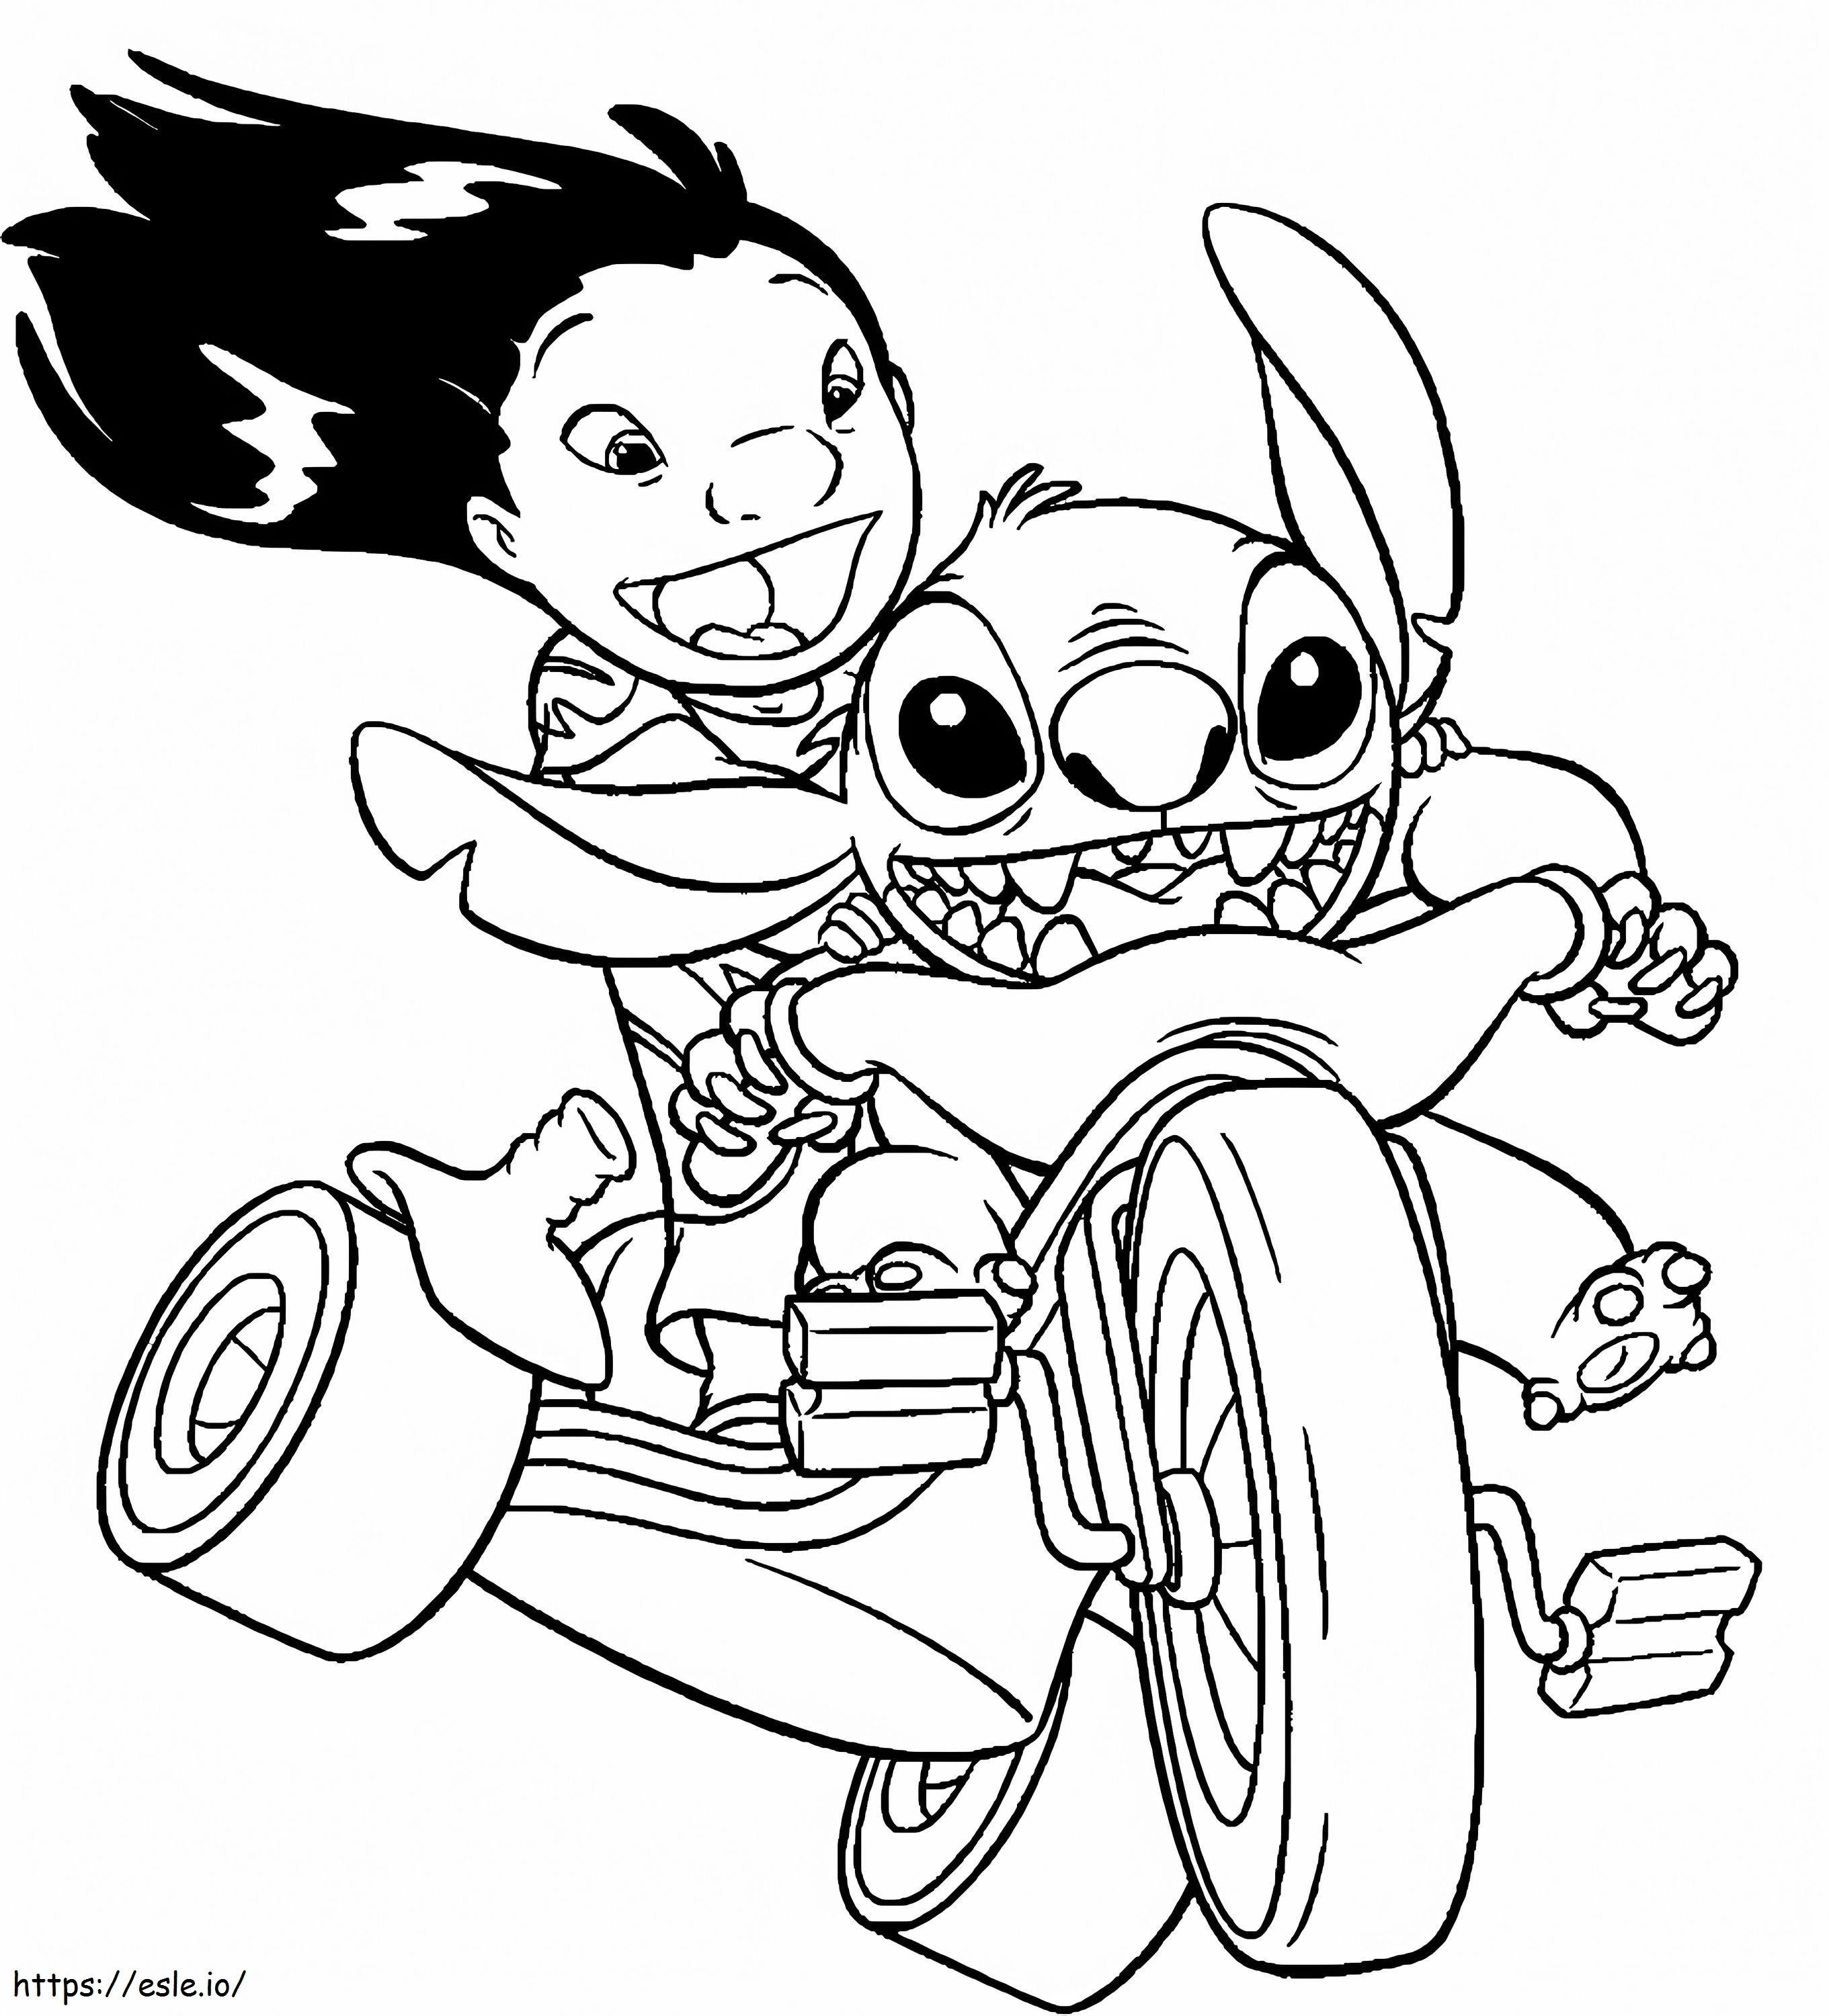 1539916445 Genial montar en bicicleta Lilo y Stitch una motocicleta para colorear